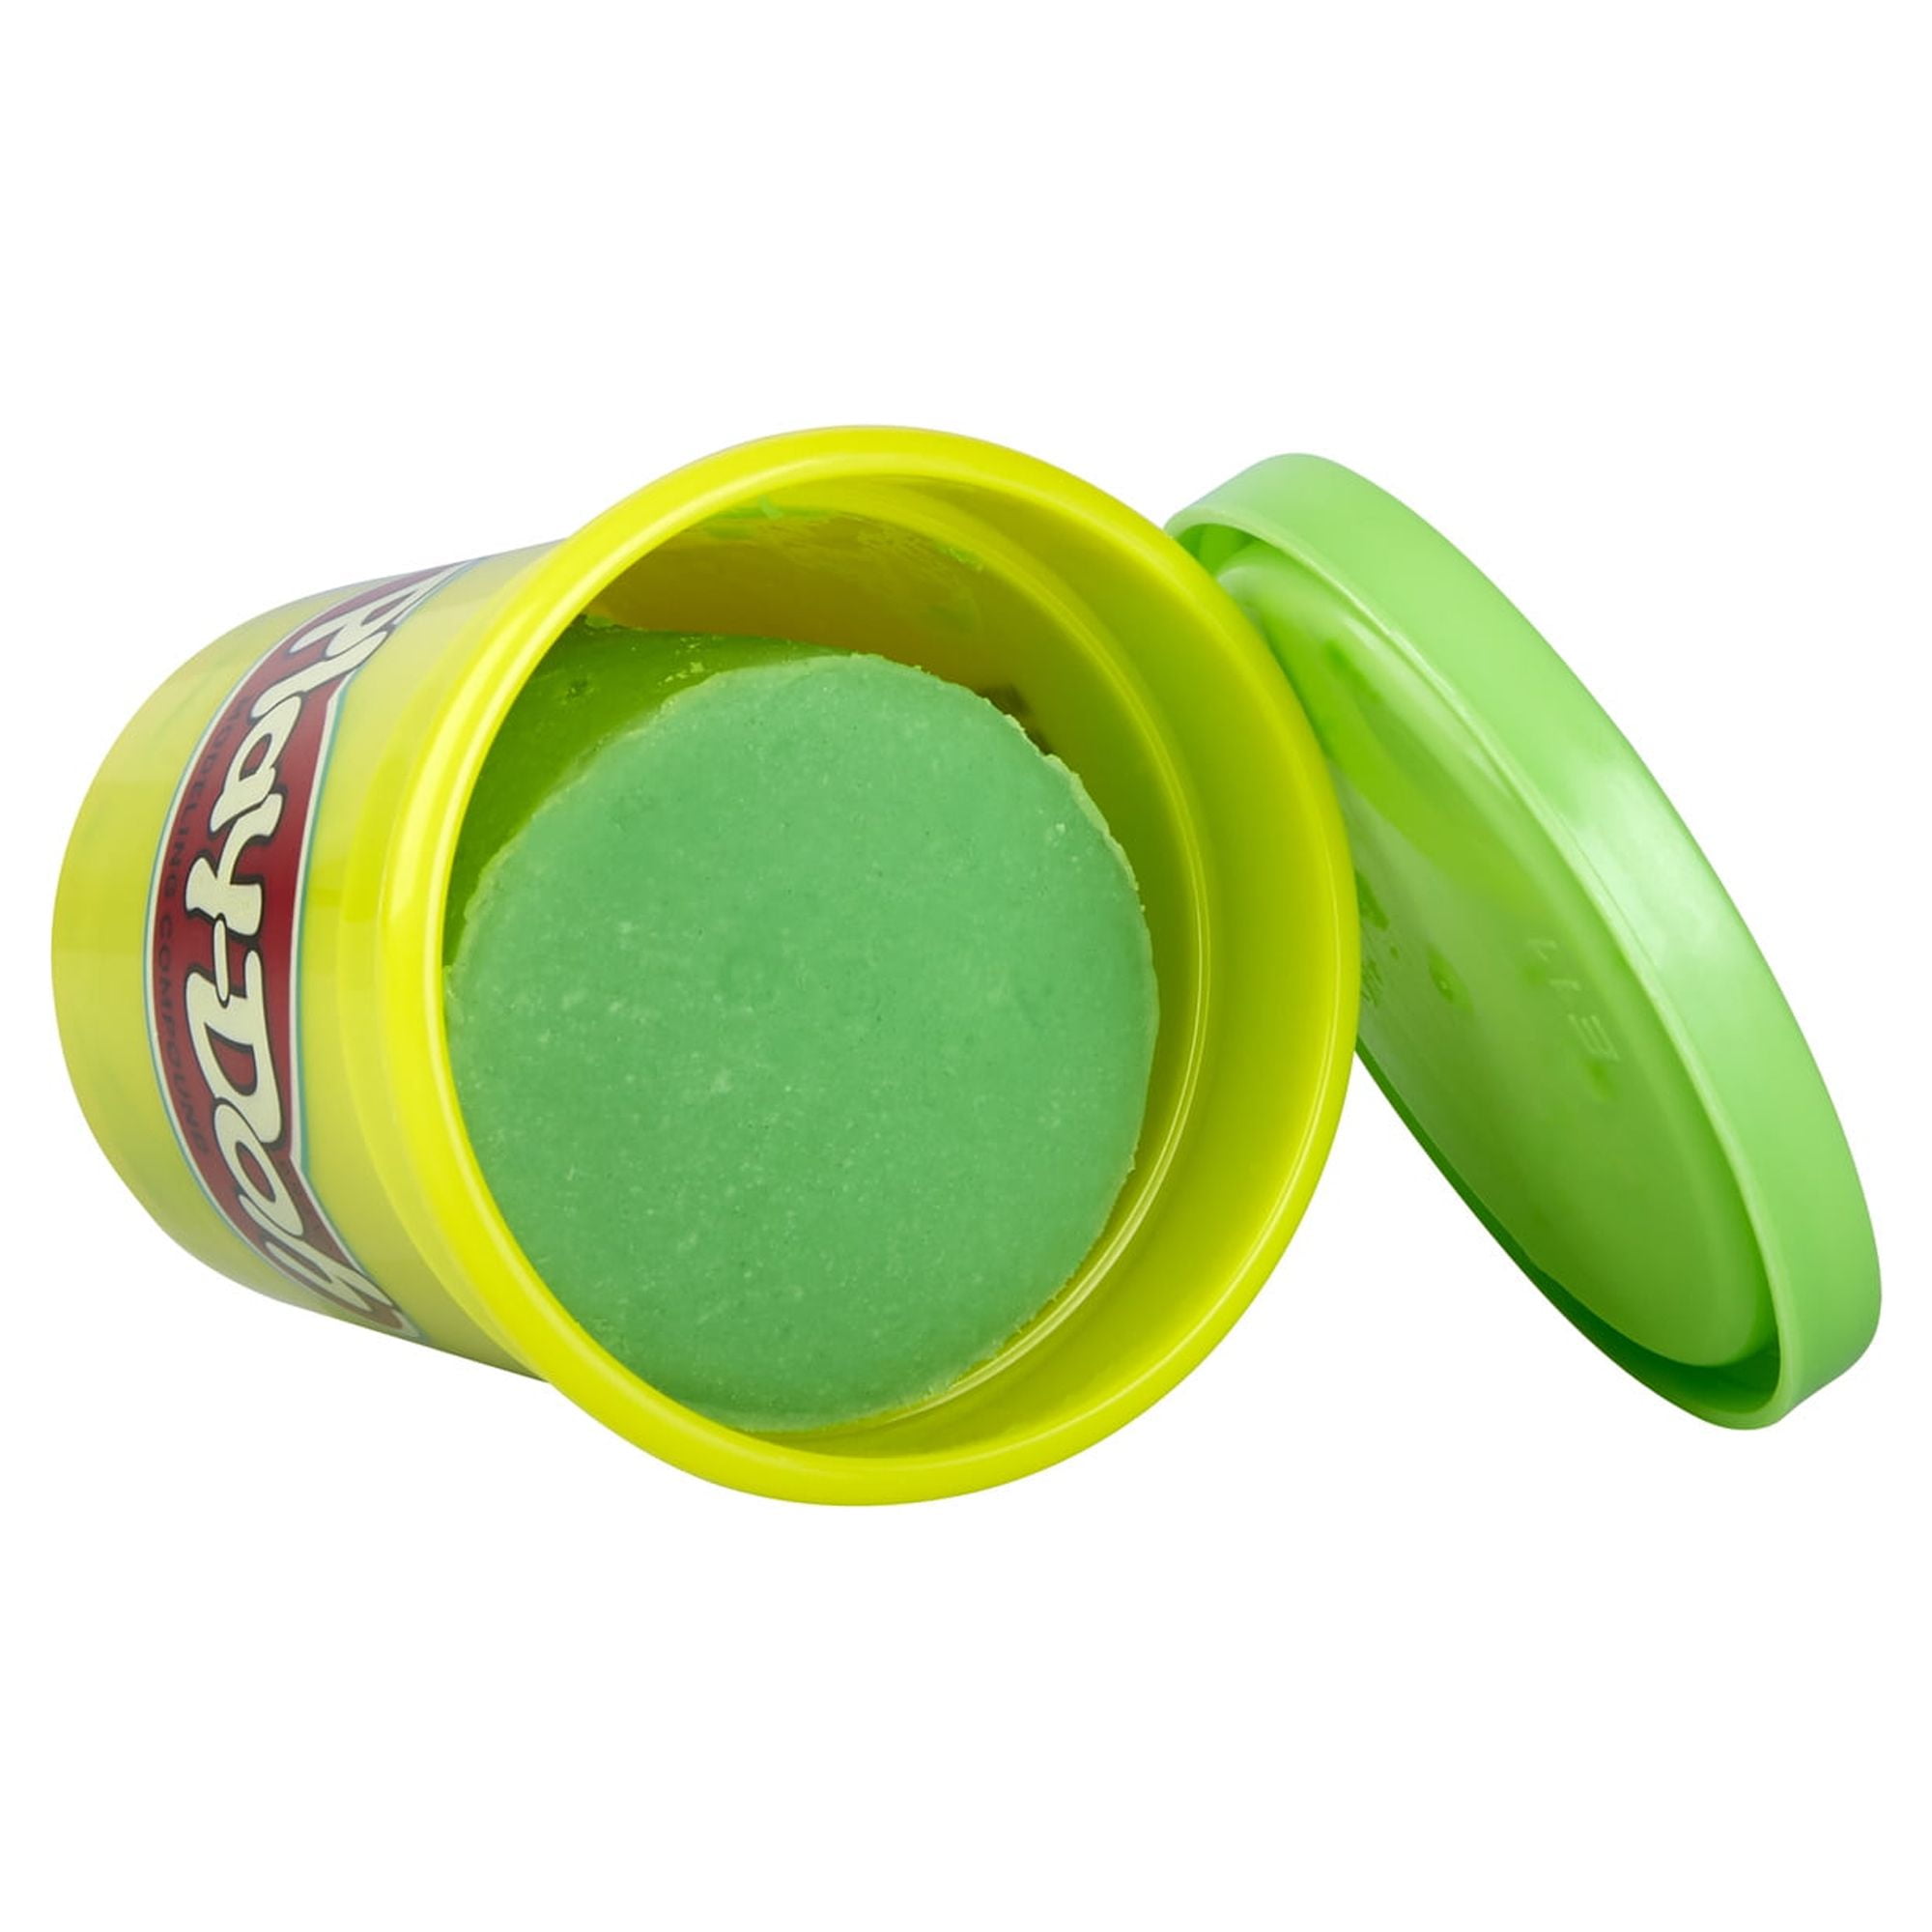 Shop Play-Doh Bulk 12-Pack of Green Non-Toxic at Artsy Sister.